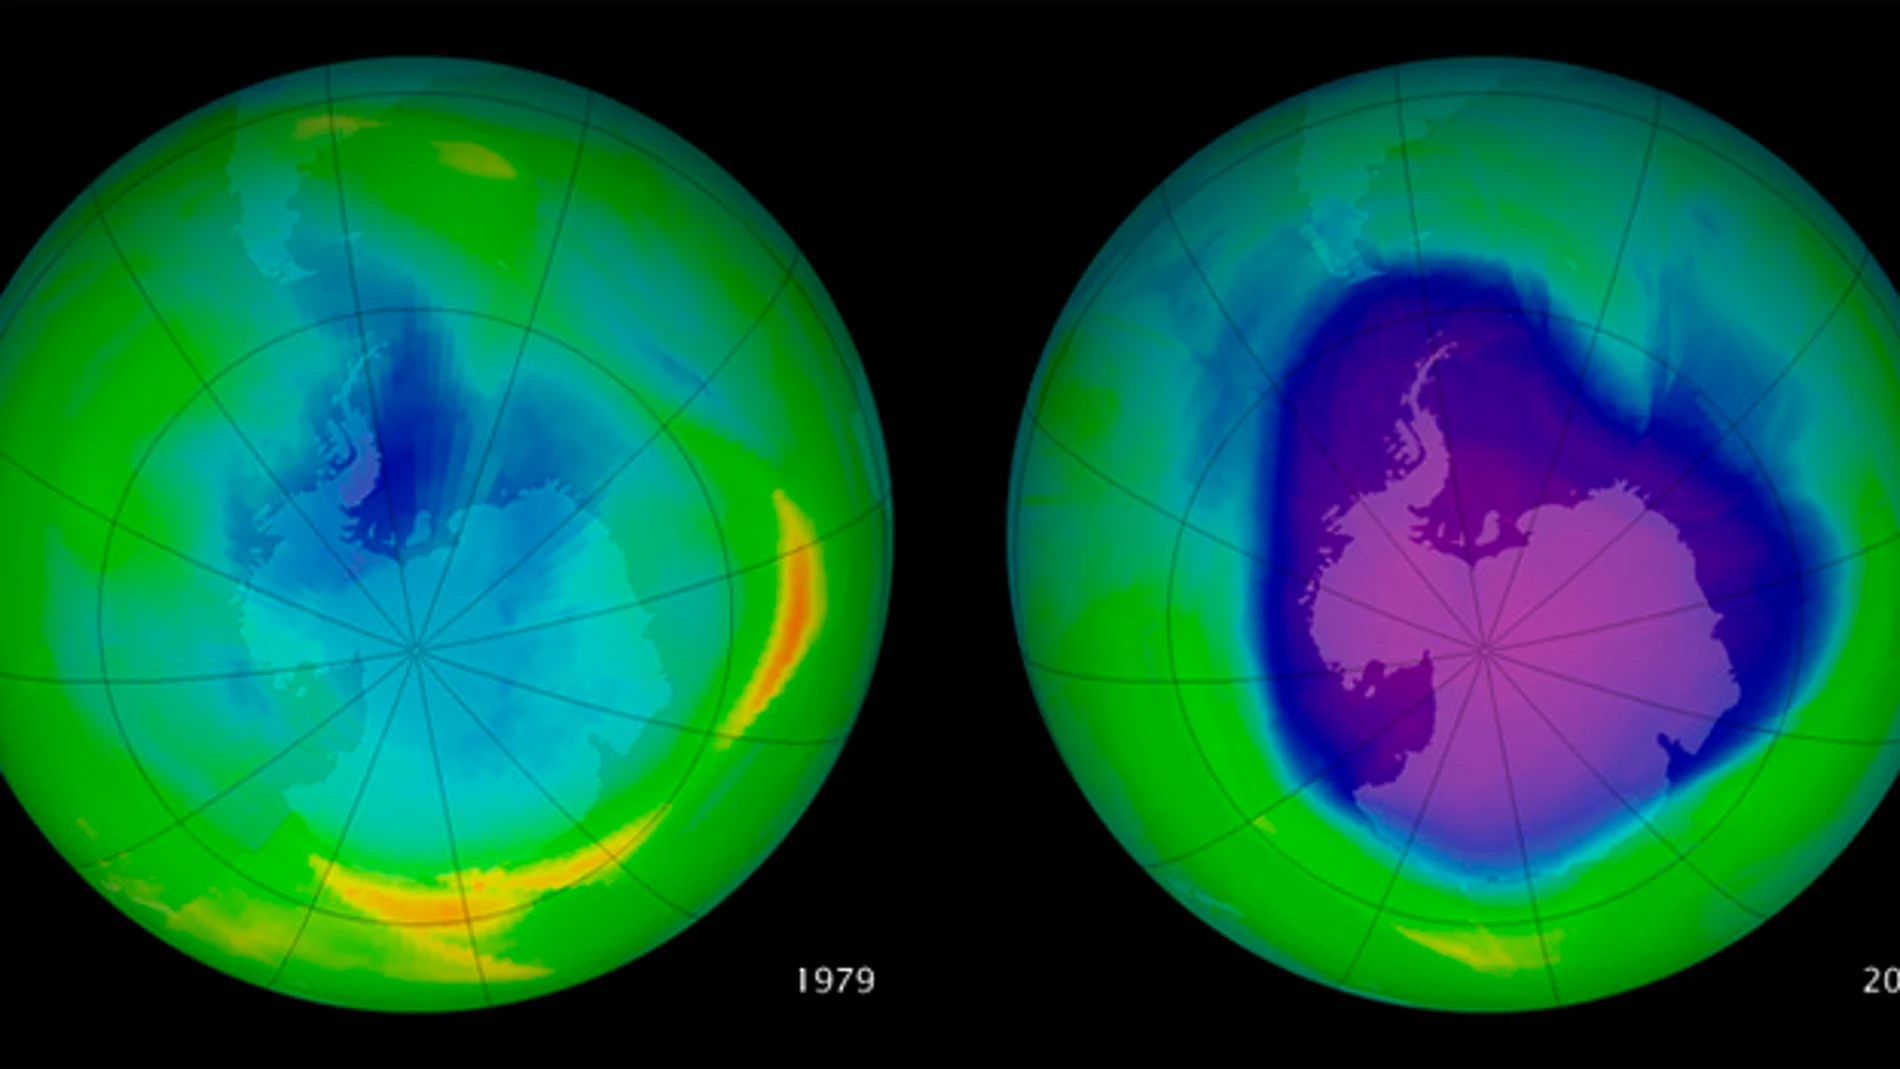 Si bien se registran niveles de recuperación de la capa de ozono, las sustancias que reemplazan a los llamados clorofluoruros de carbono son peores gases de efecto invernadero